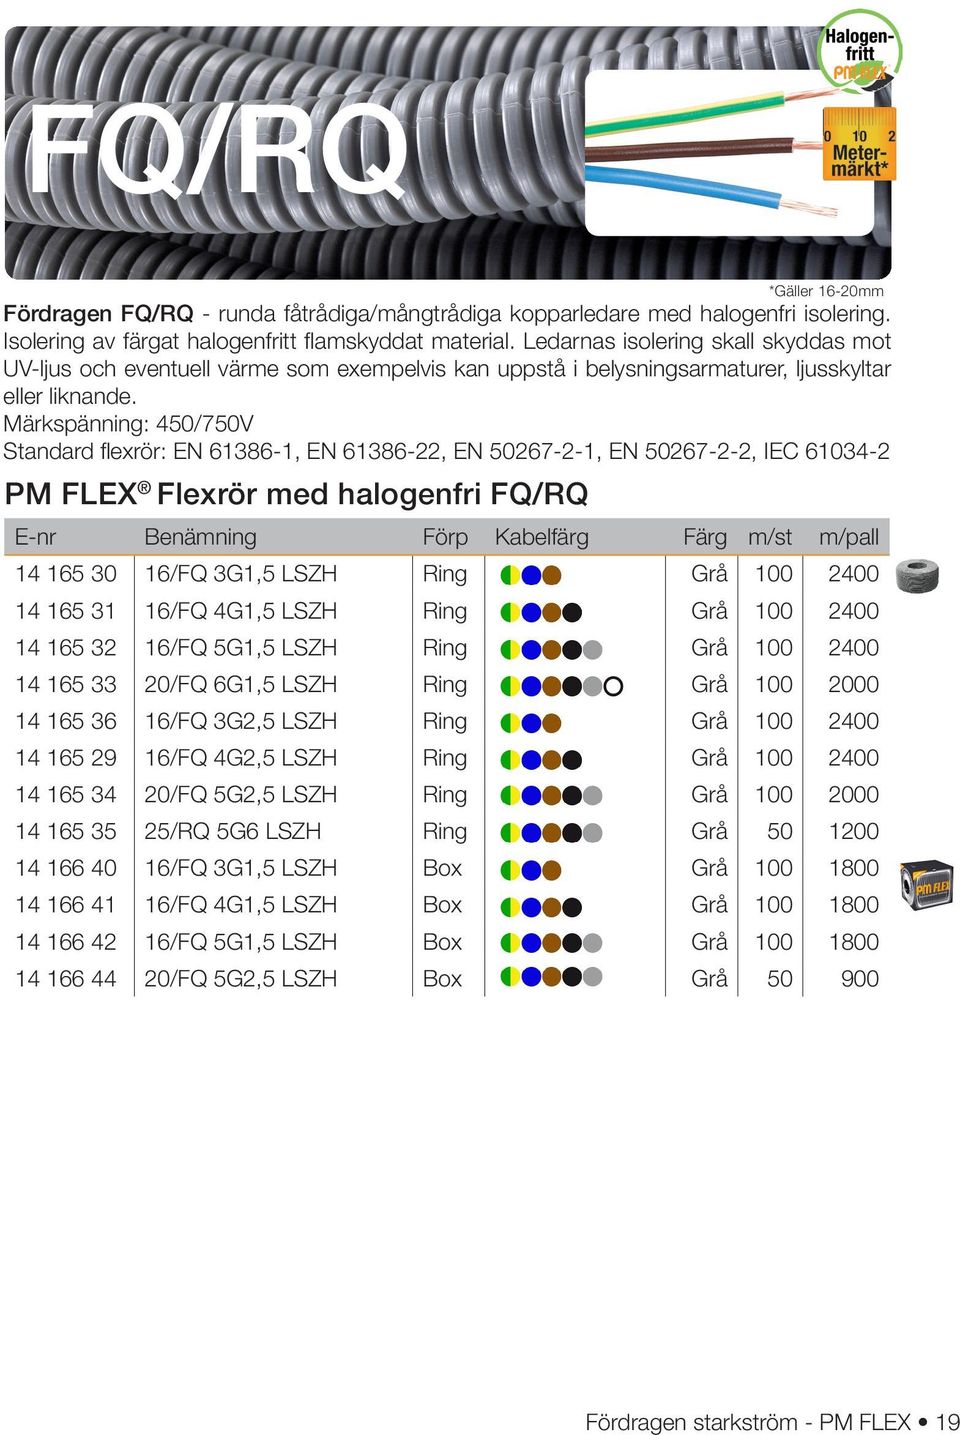 Märkspänning: 450/750V Standard flexrör: EN 61386-1, EN 61386-22, EN 50267-2-1, EN 50267-2-2, IEC 61034-2 PM FLEX Flexrör med halogenfri FQ/RQ *Gäller 16-20mm E-nr Benämning Förp Kabelfärg Färg m/st